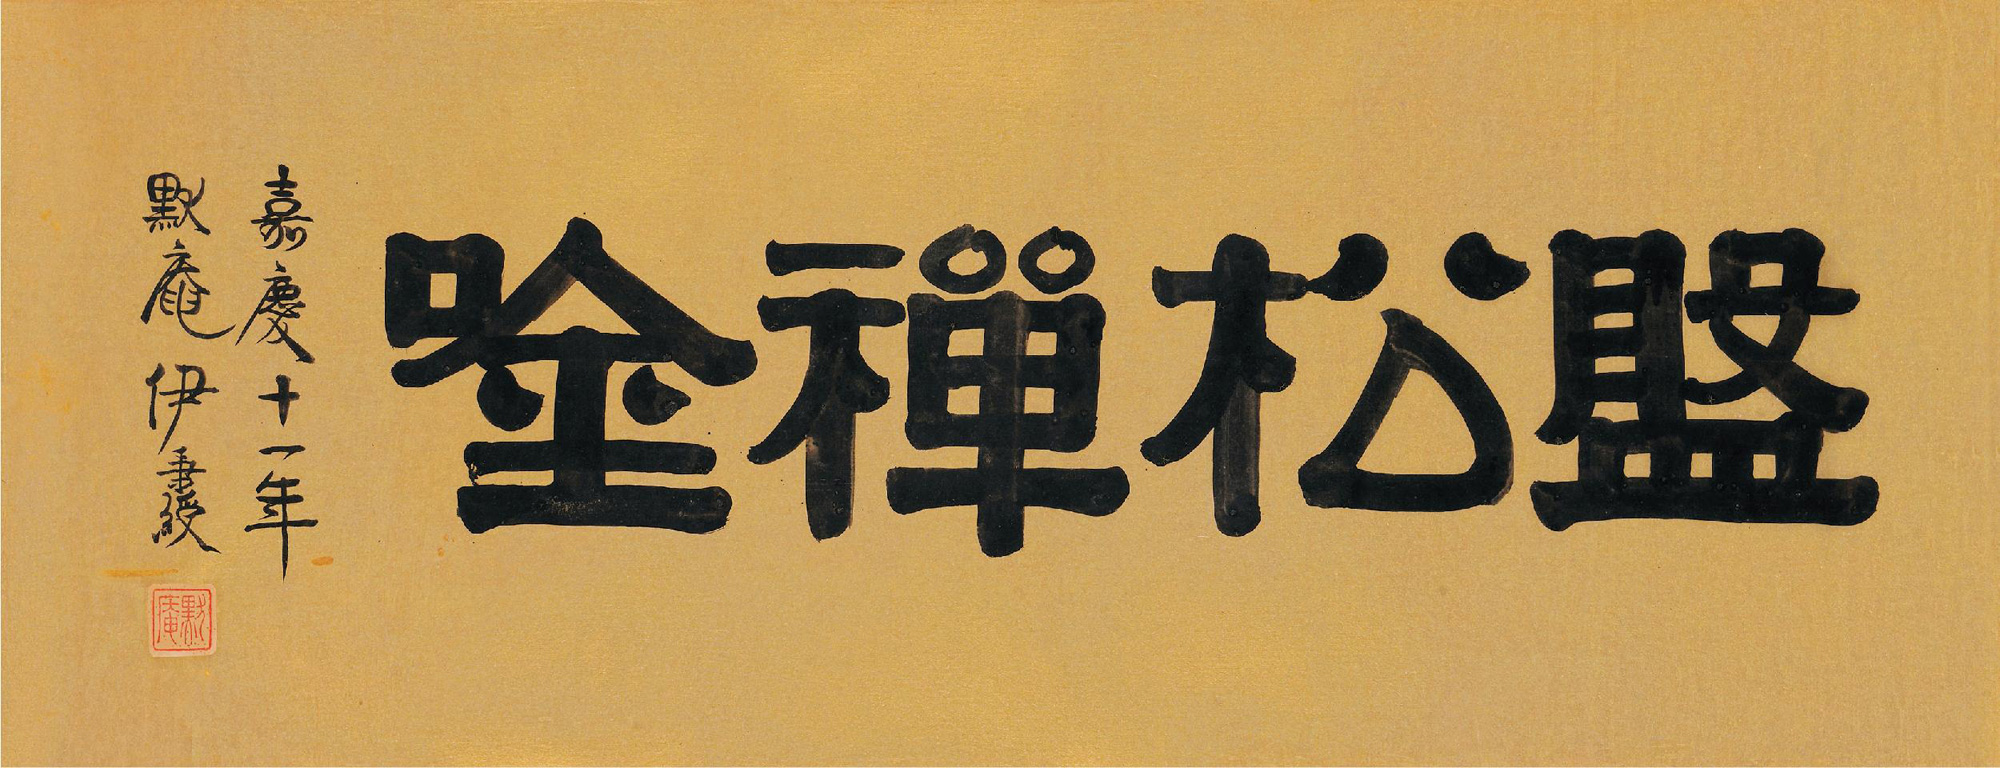 16421 1806年作 隶书"盘松禅唫" 横幅 水墨洒金